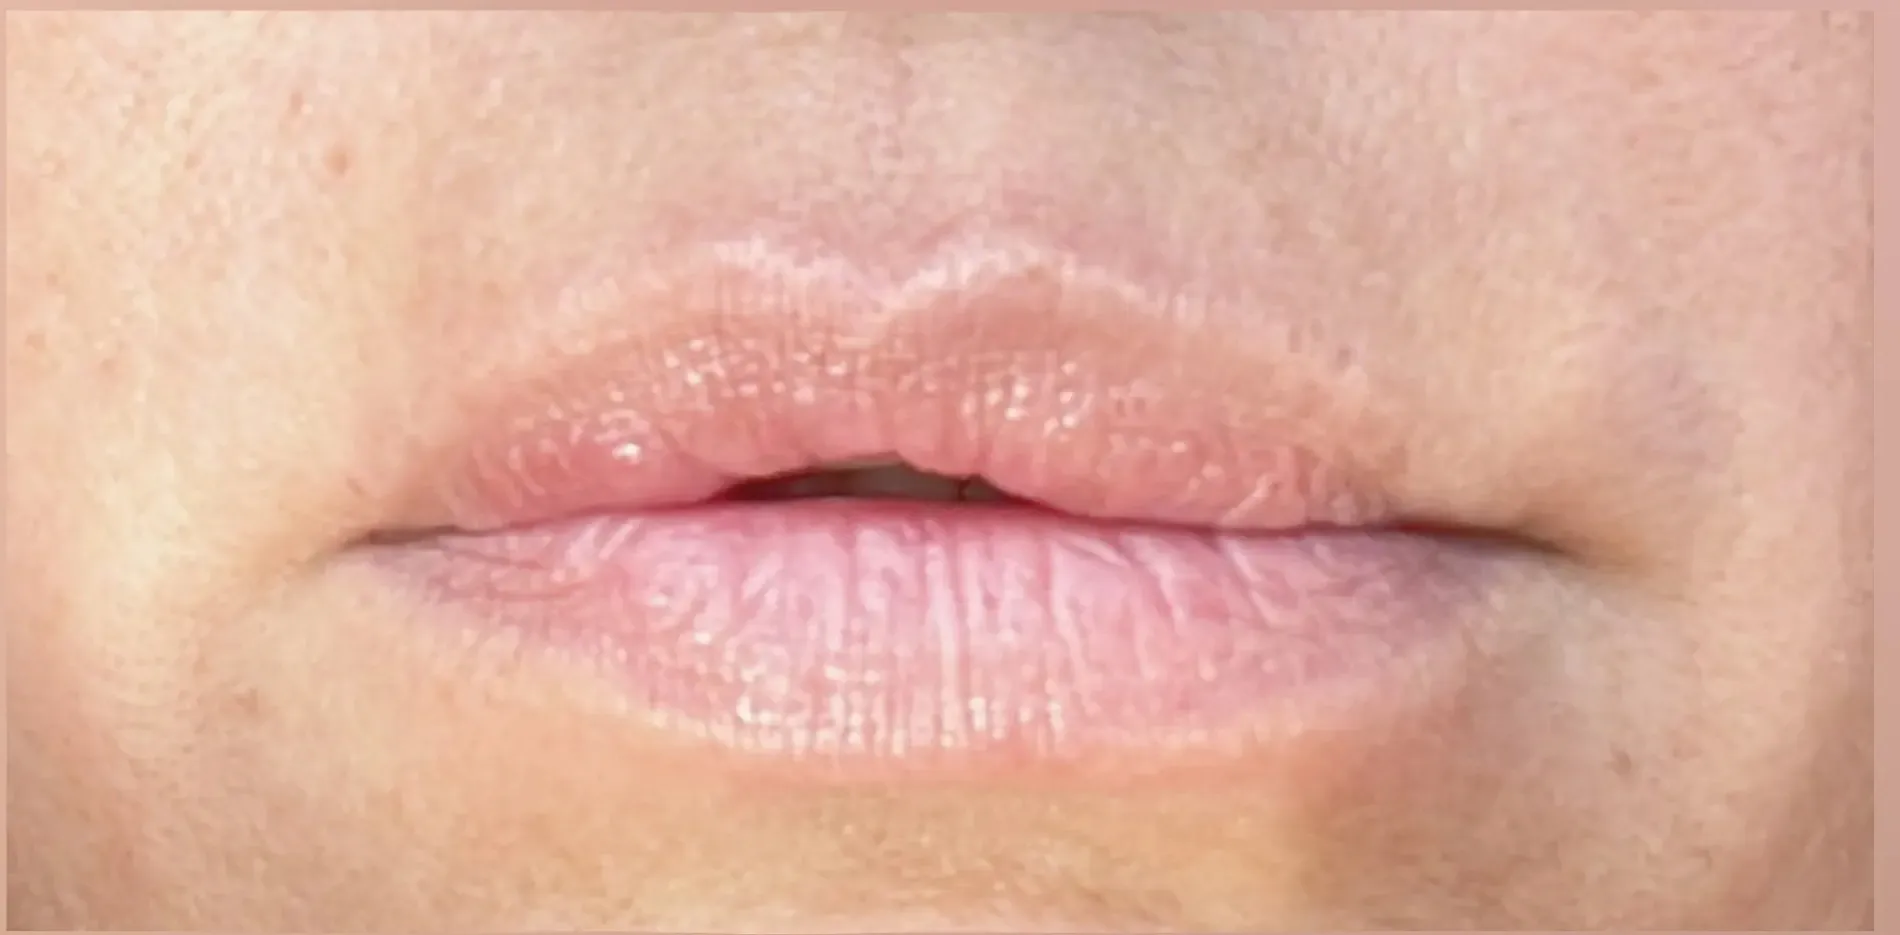 Lippen 2 vorher